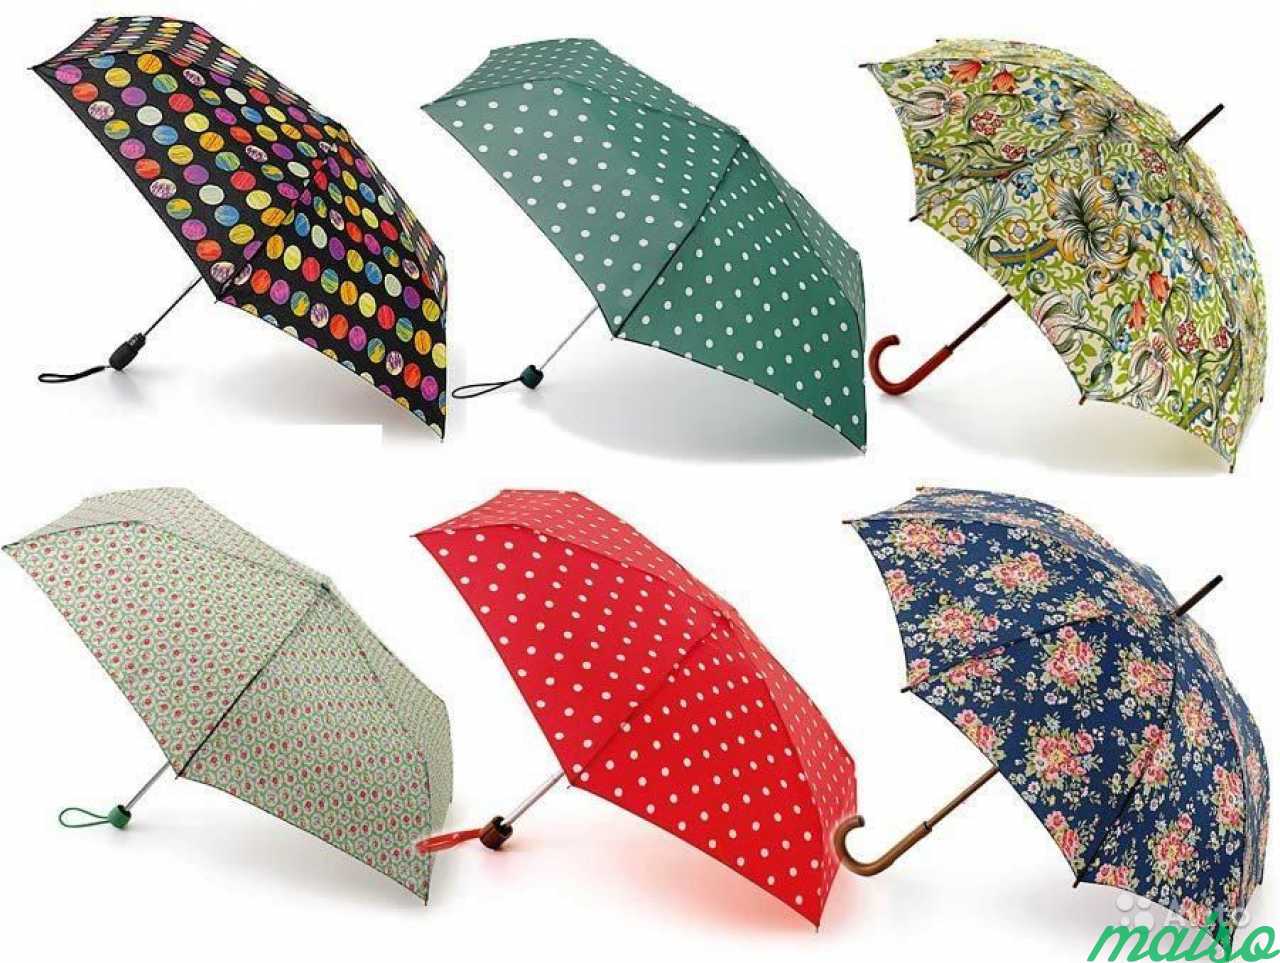 Разные зонтики